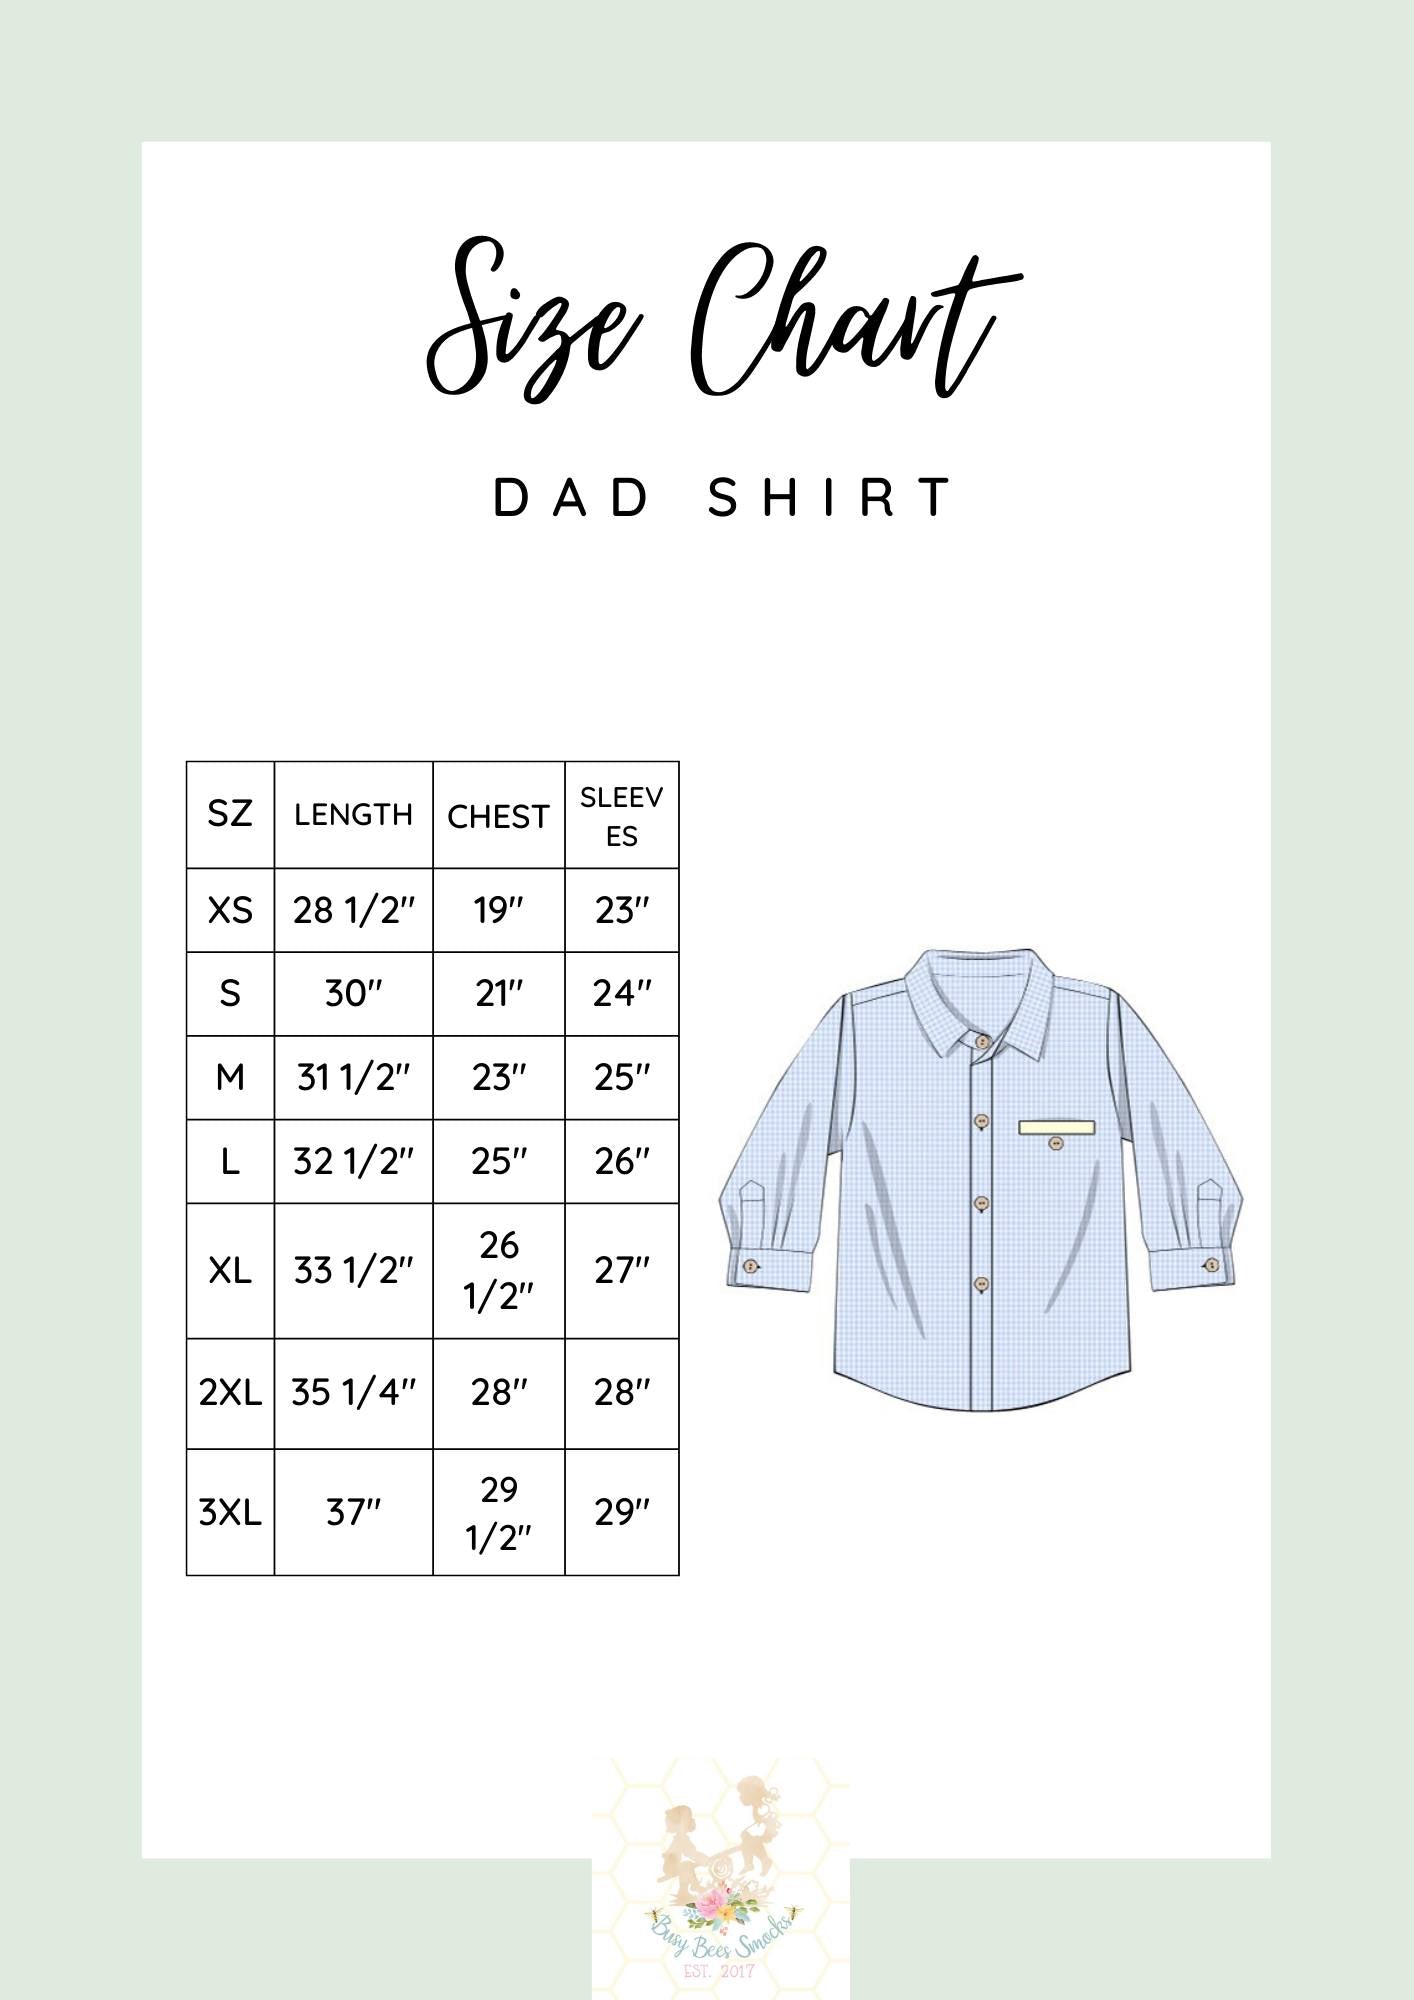 Dad Button Up Shirt Size Chart